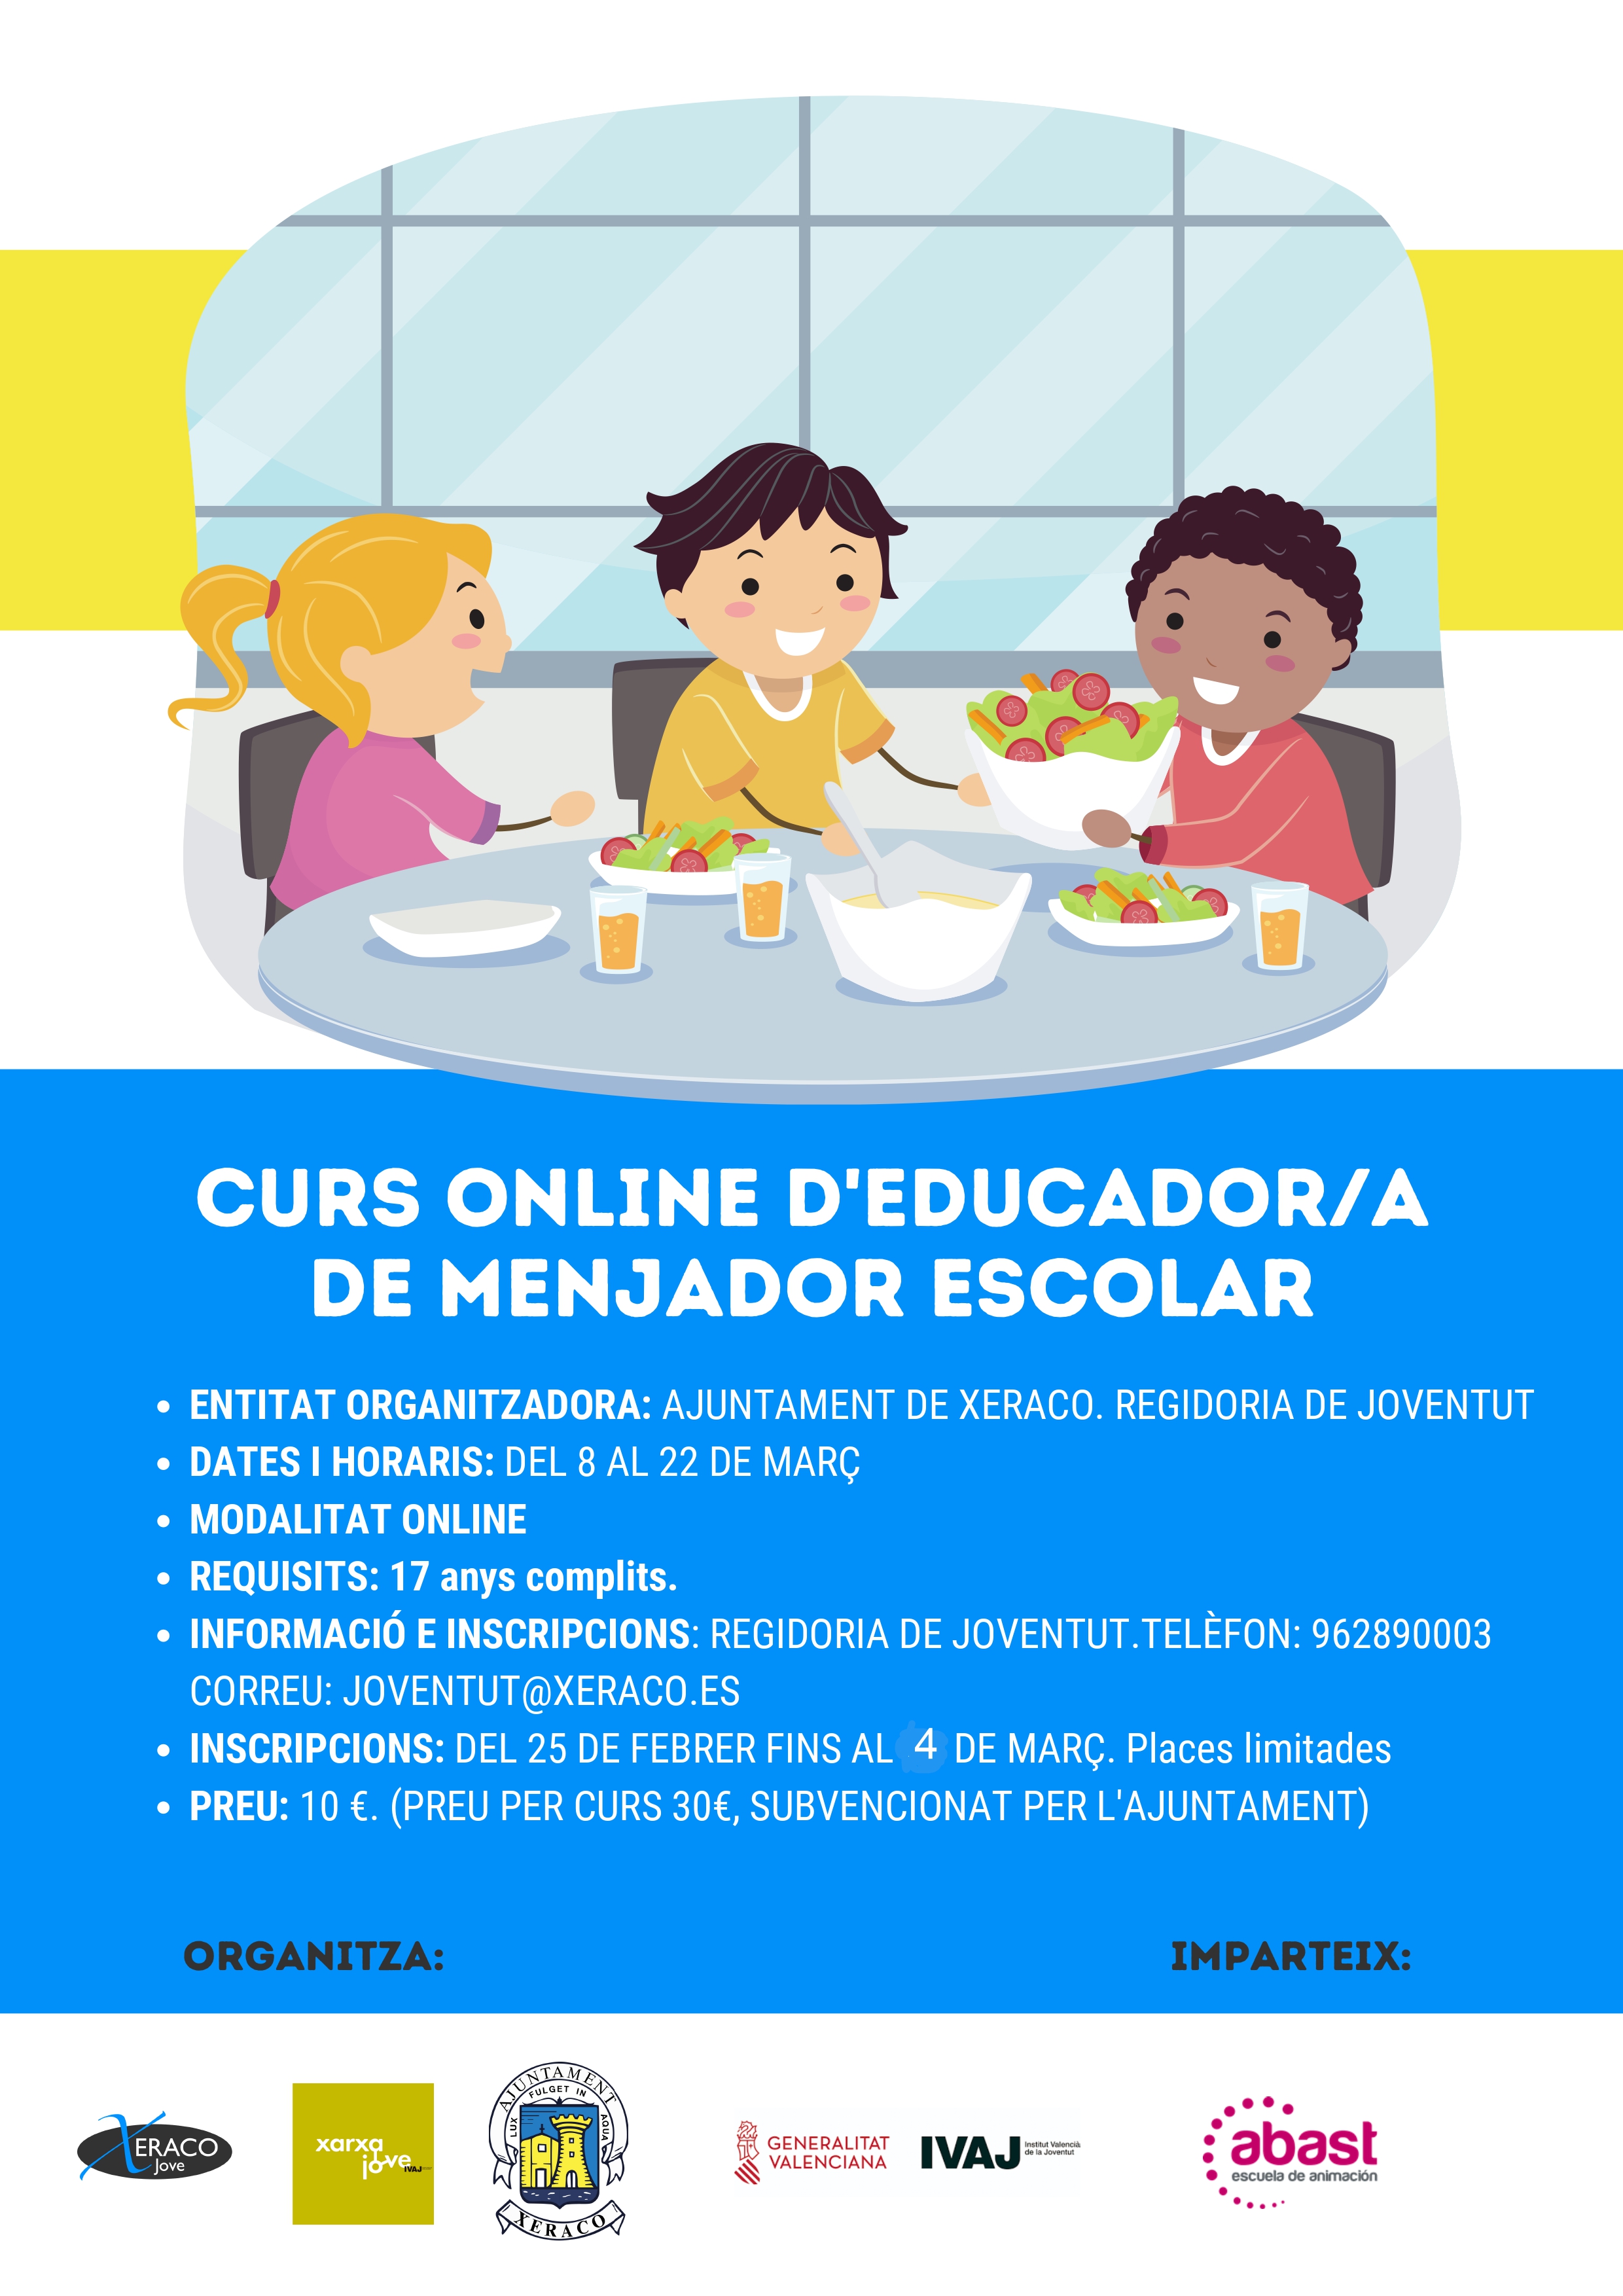 Cursos Online d'Educador/a de Menjador Escolar i d'Aula Matinal